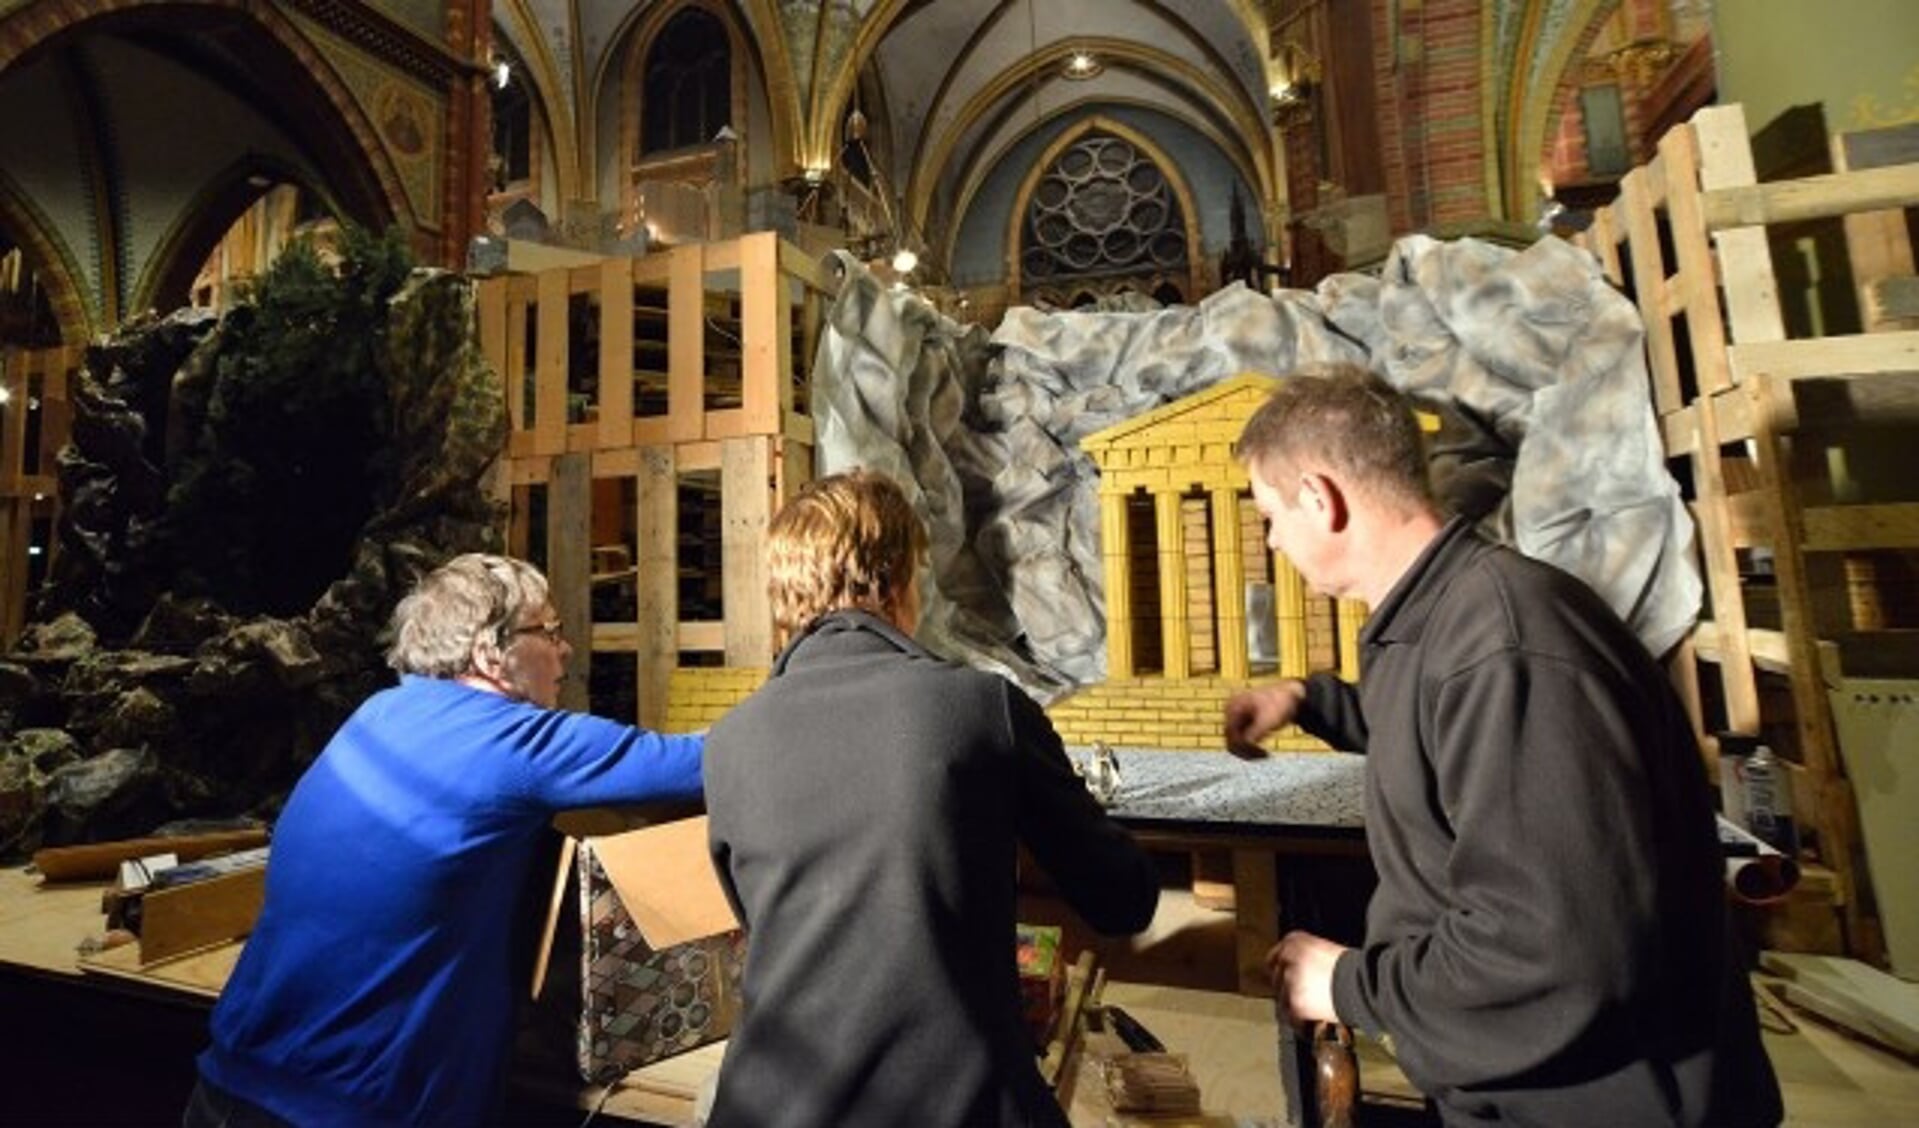 Miranda Hoogenboom, Elly de Wit en Kees van Vliet zijn druk doende met het opbouwen van de kerststalletjes. (Foto: Paul van den Dungen)